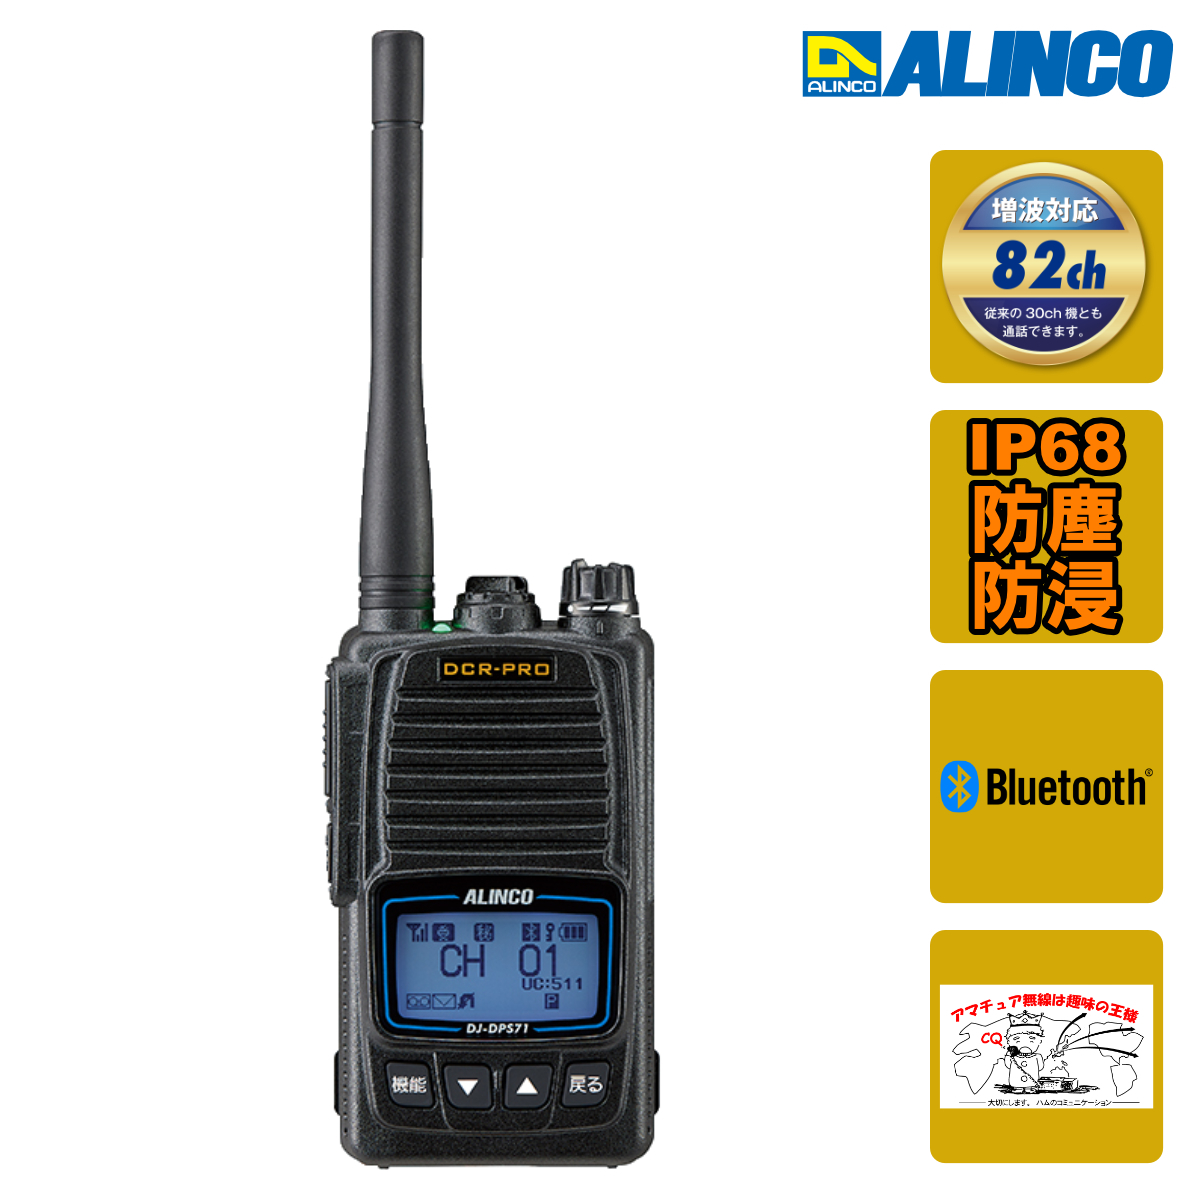 トランシーバー DJ-DPS71EKA アルインコ Bluetooth対応 デジタル82ch 351MHz帯増波対応 ハンディトランシーバー_画像1